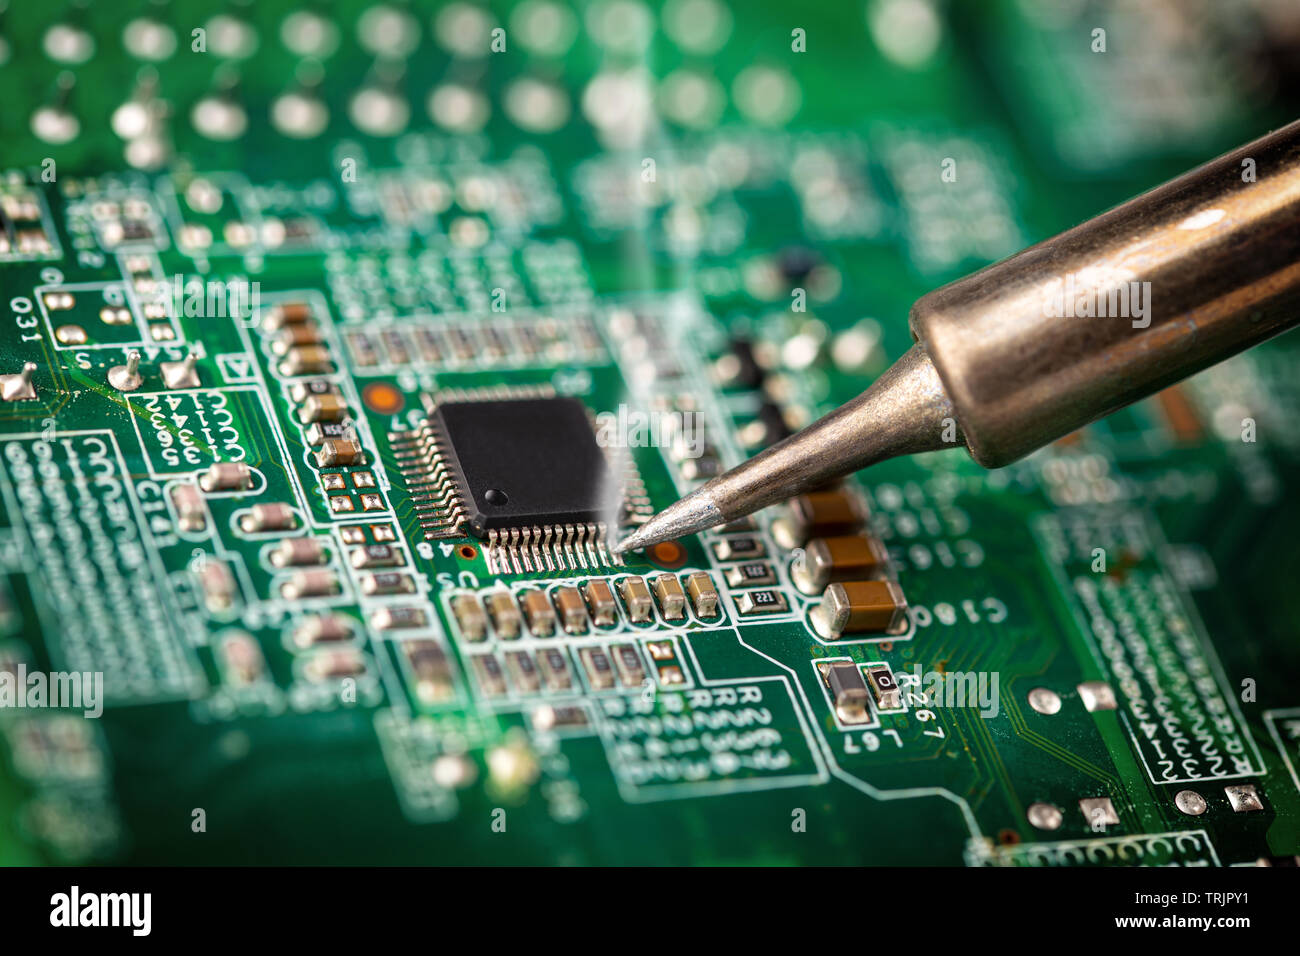 Löten einen Chip Prozessor mit Eisen auf einem grünen Circuit boad. Electroncs Service Technologie und macro Computer concept Hintergrund. Stockfoto